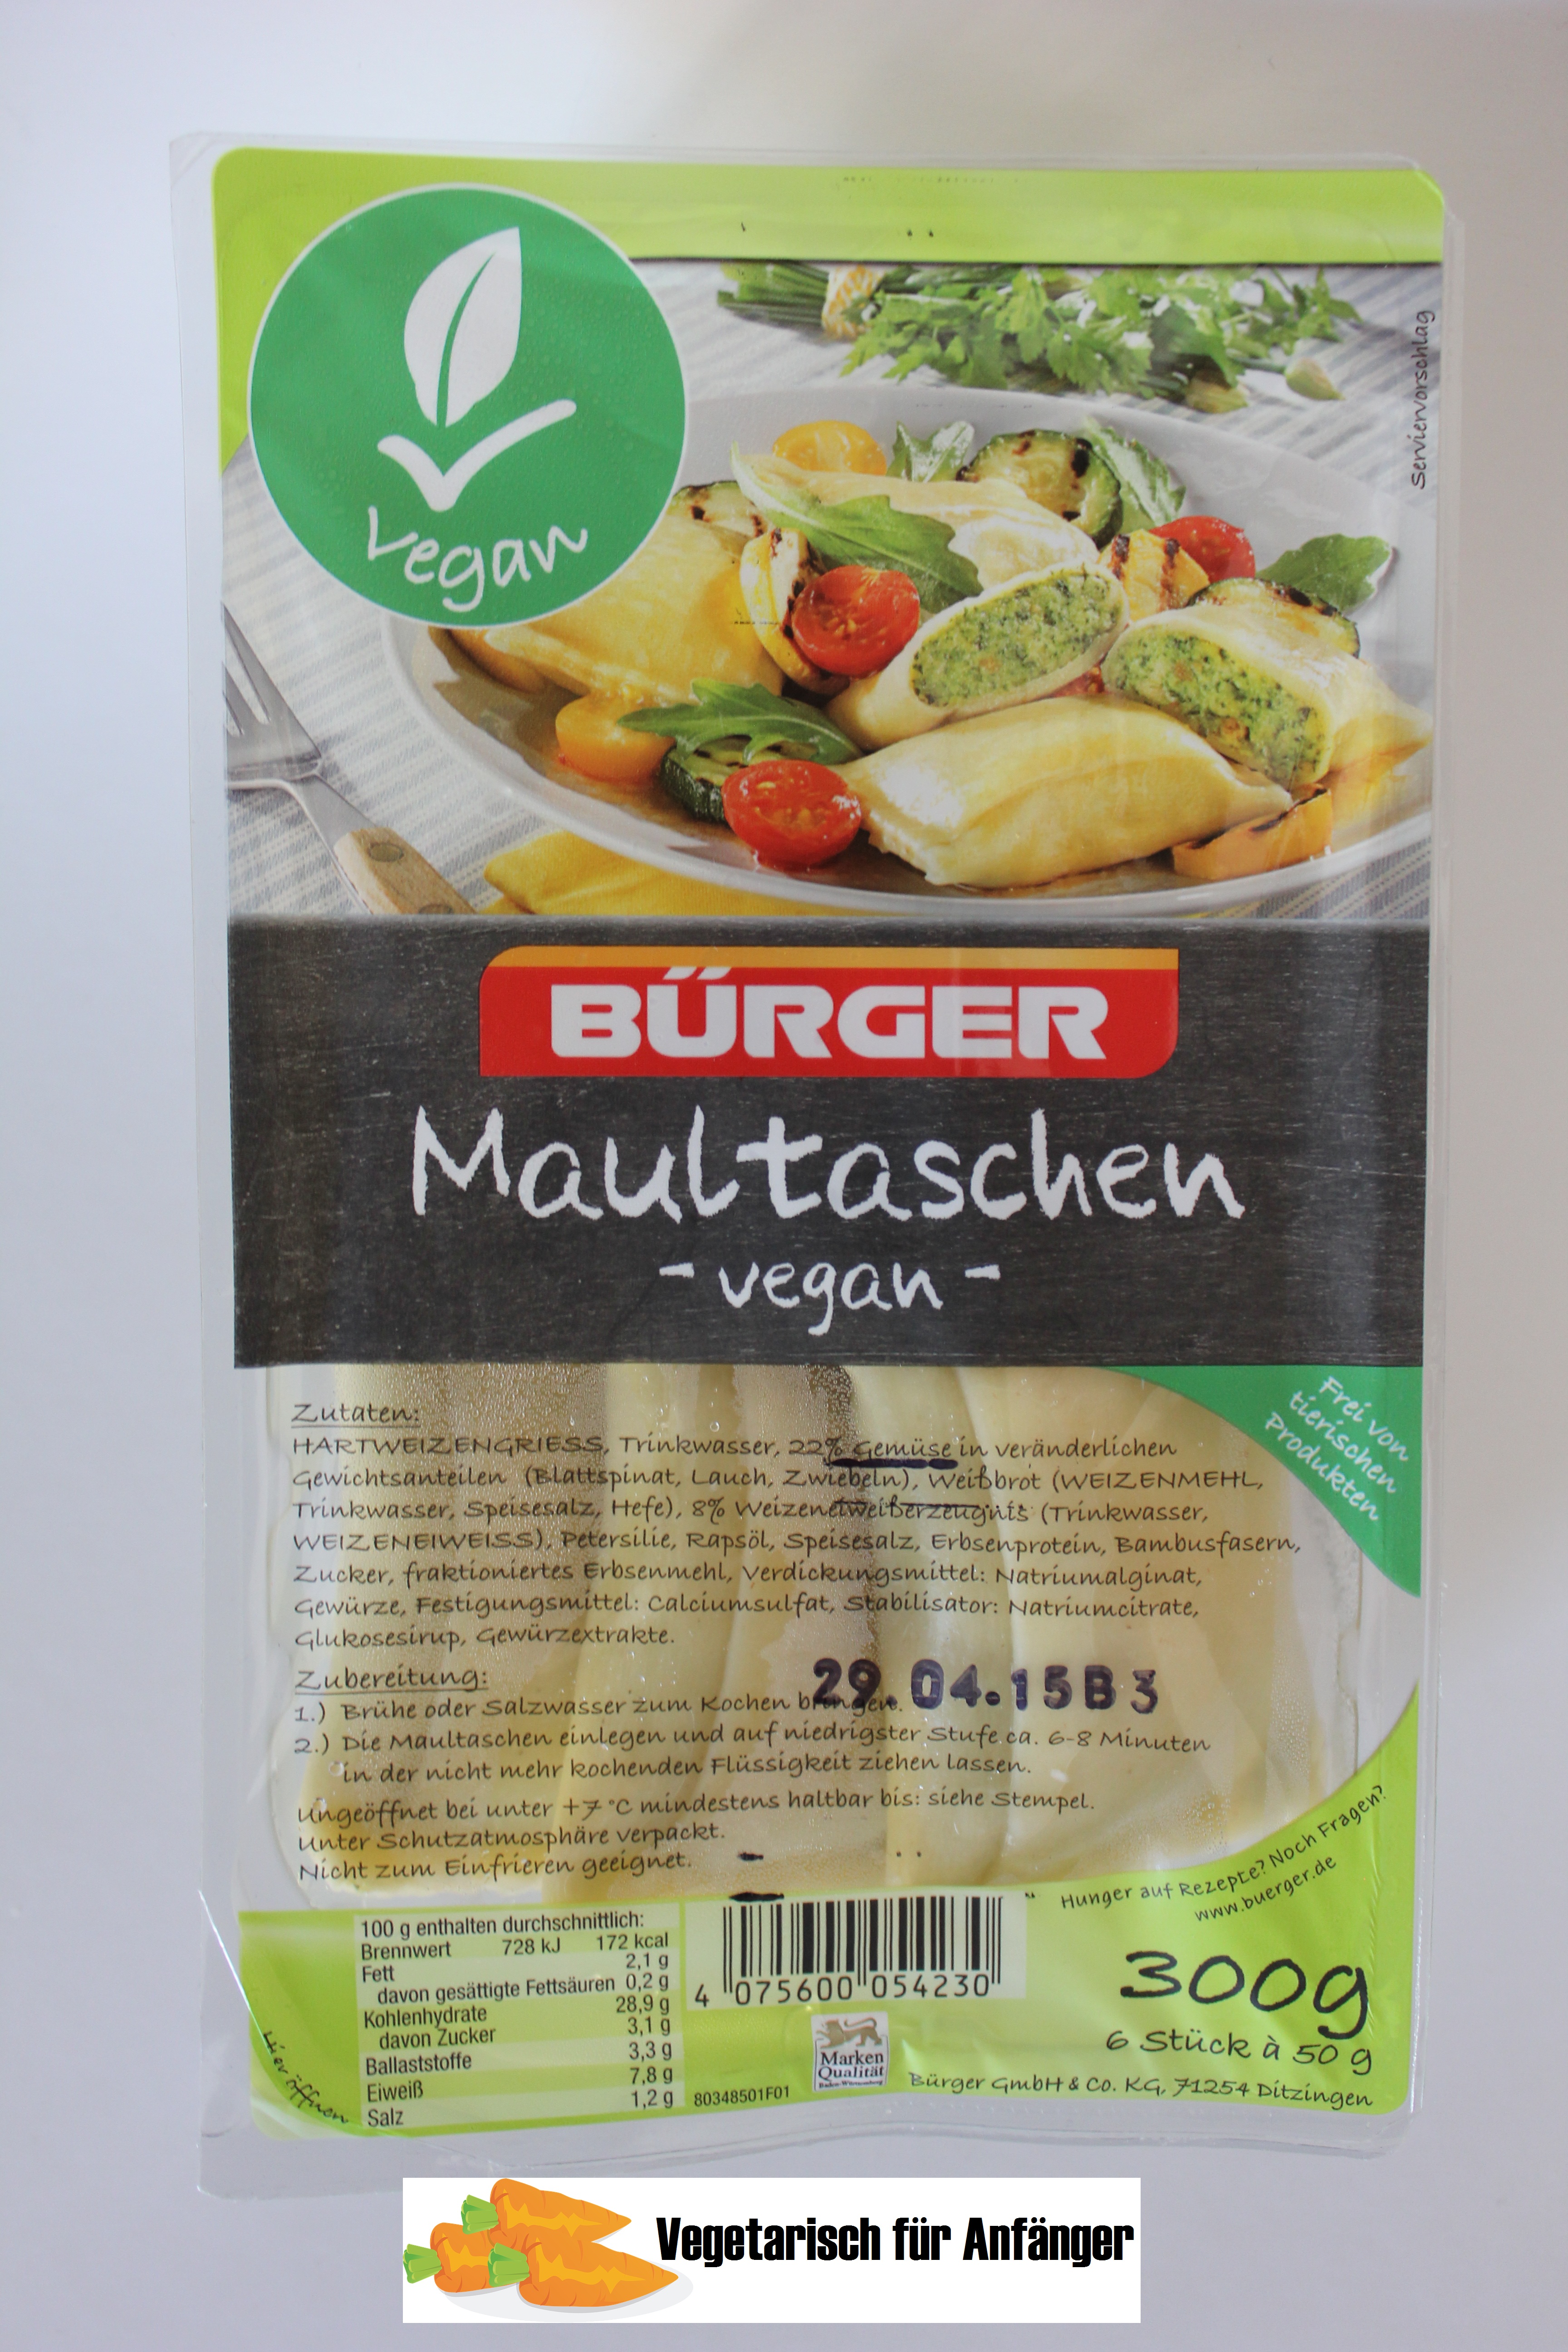 Vegane Maultaschen (Bürger) – Anfänger für Vegetarisch/Vegan